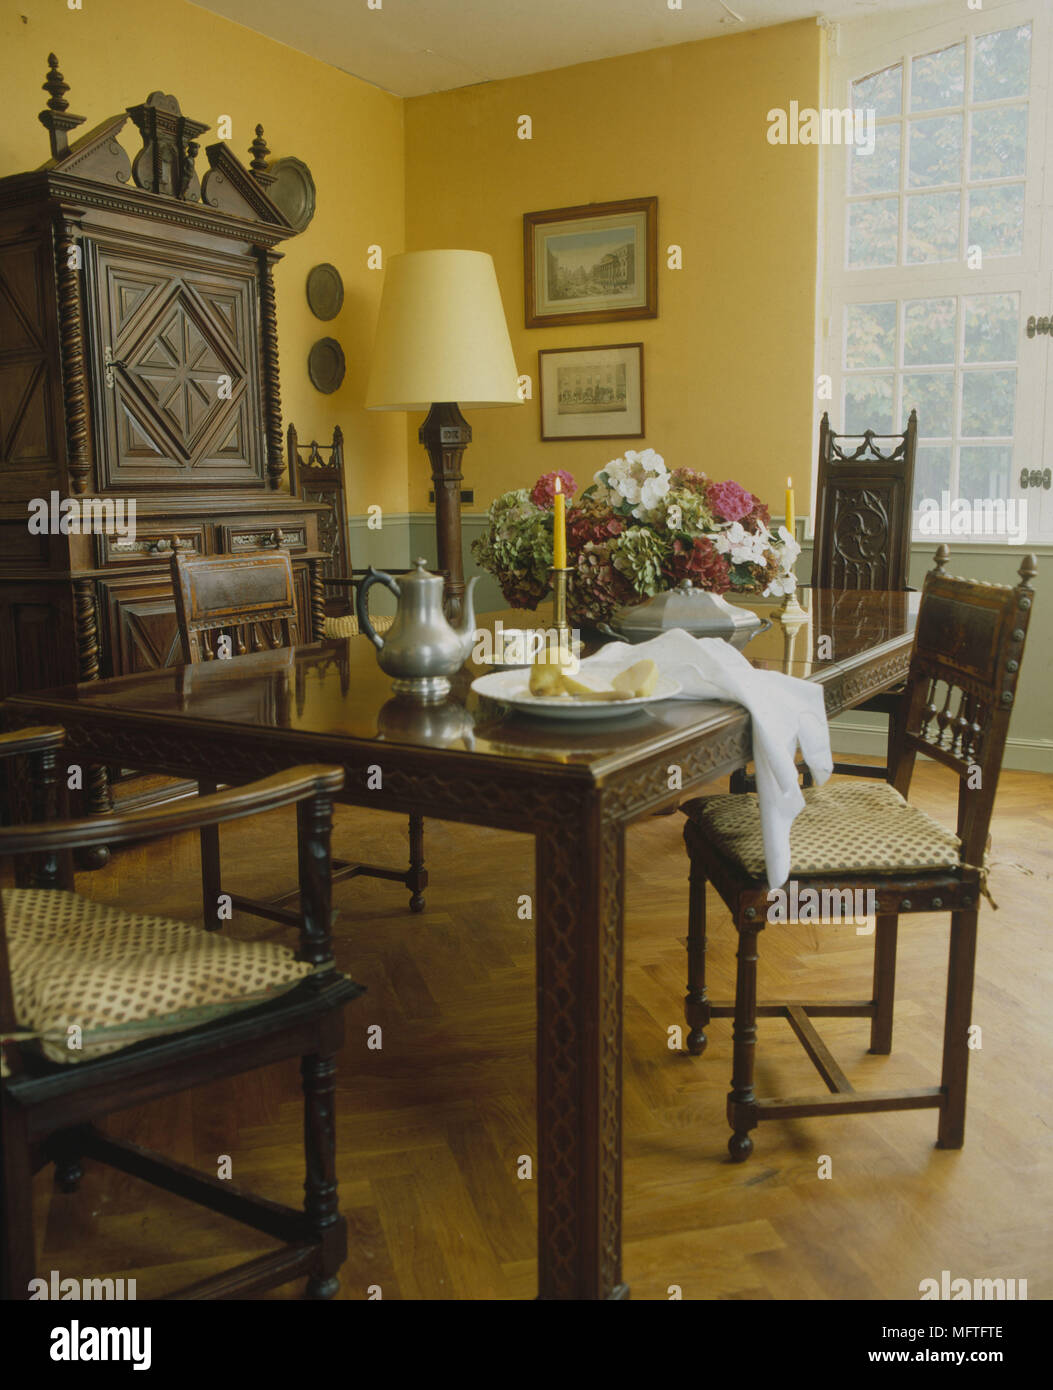 Tradizionale sala da pranzo giallo e verde pallido pareti tavolo sedie cuscini ornati scolpiti unità laterali interni camere standard colore lampada abat-jour fram Foto Stock